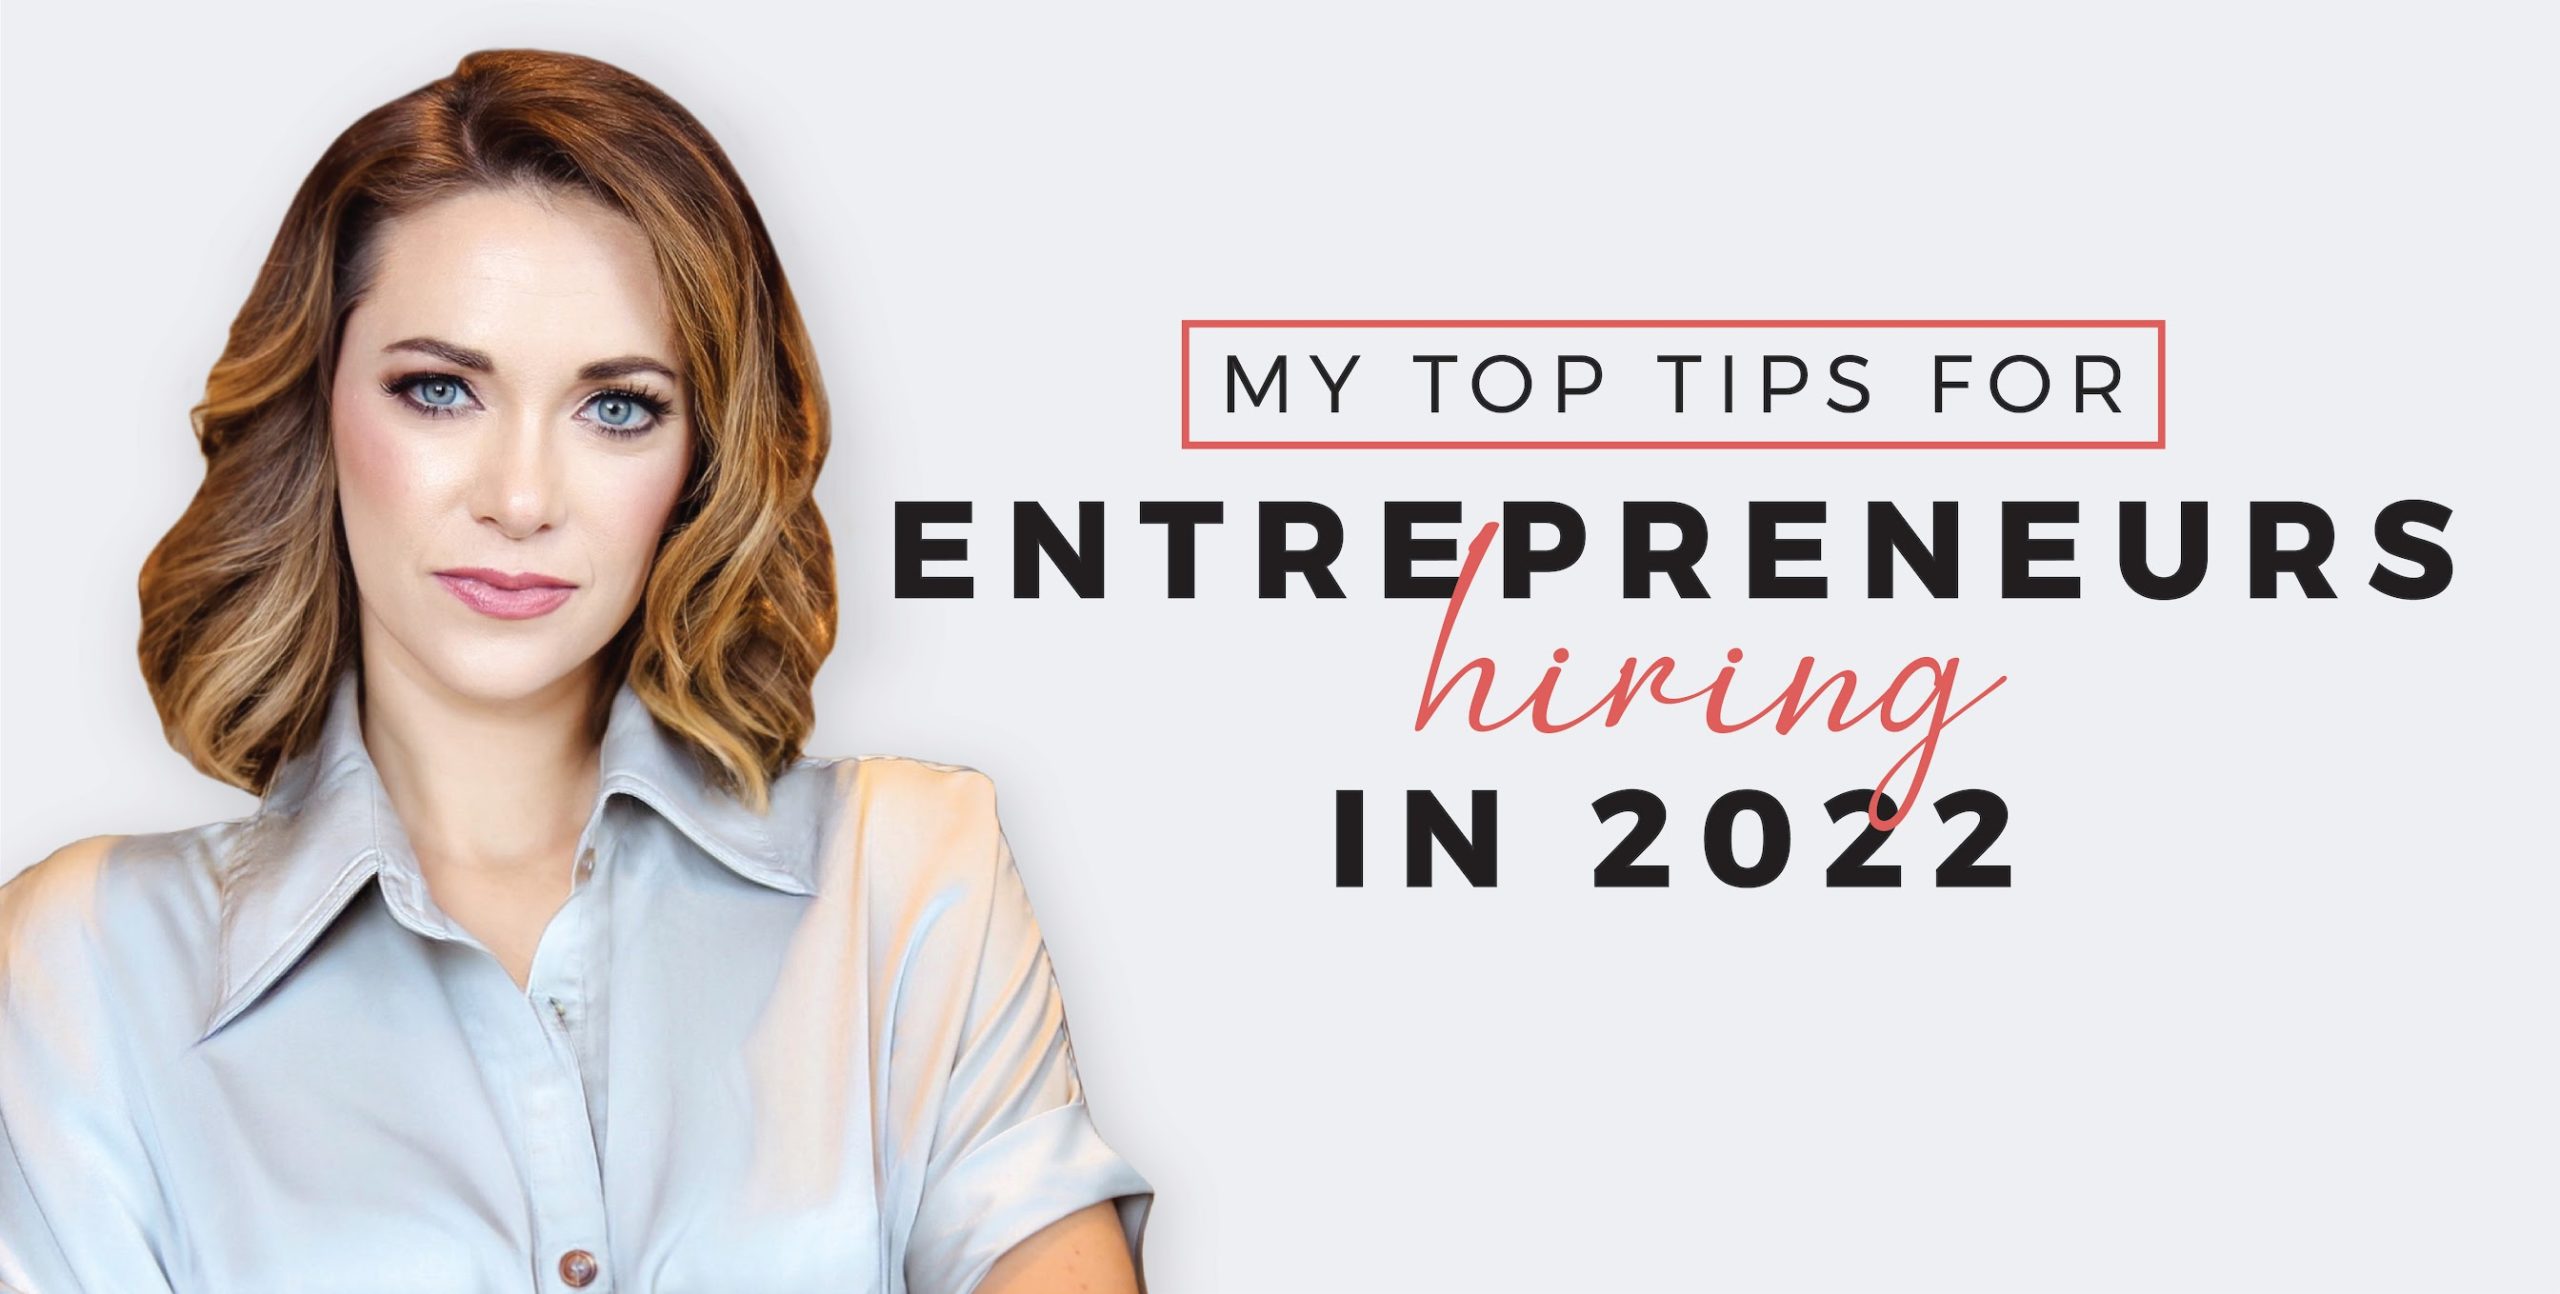 Hiring tips for entrepreneurs